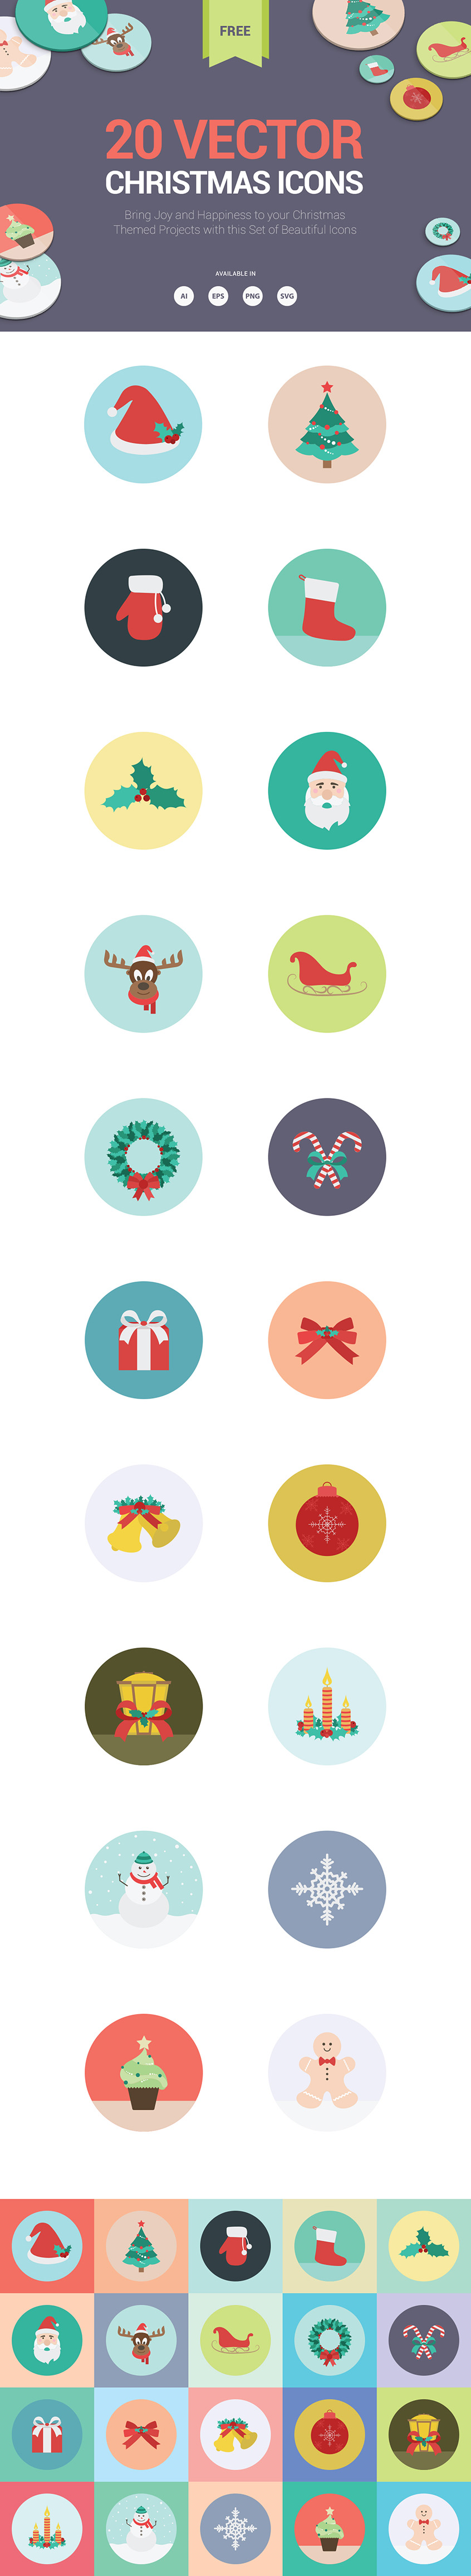 20 Christmas Icons 2015